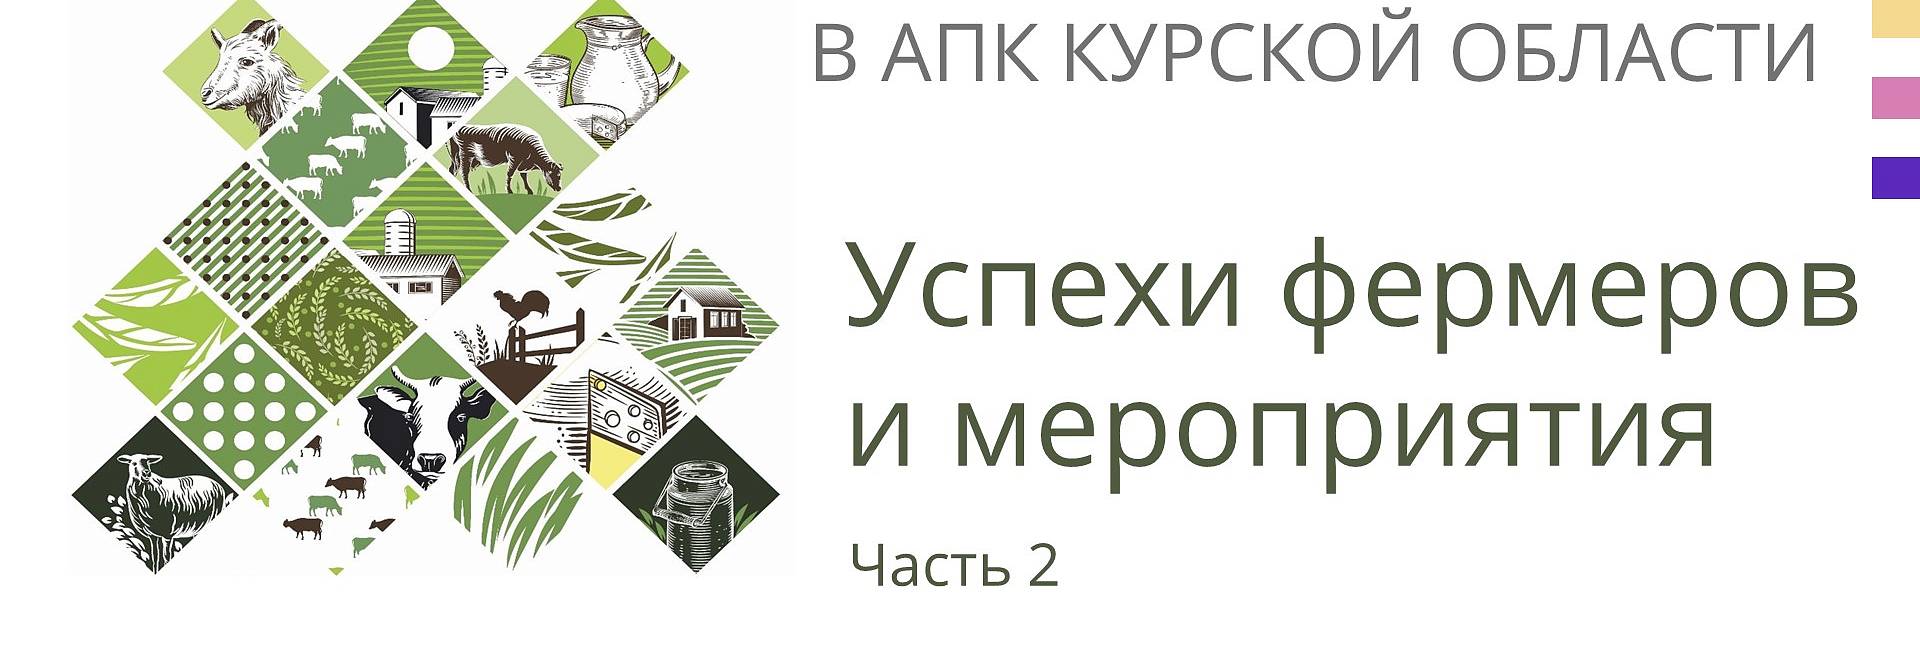 Работа Центра компетенций в АПК Курской области за 2021 год